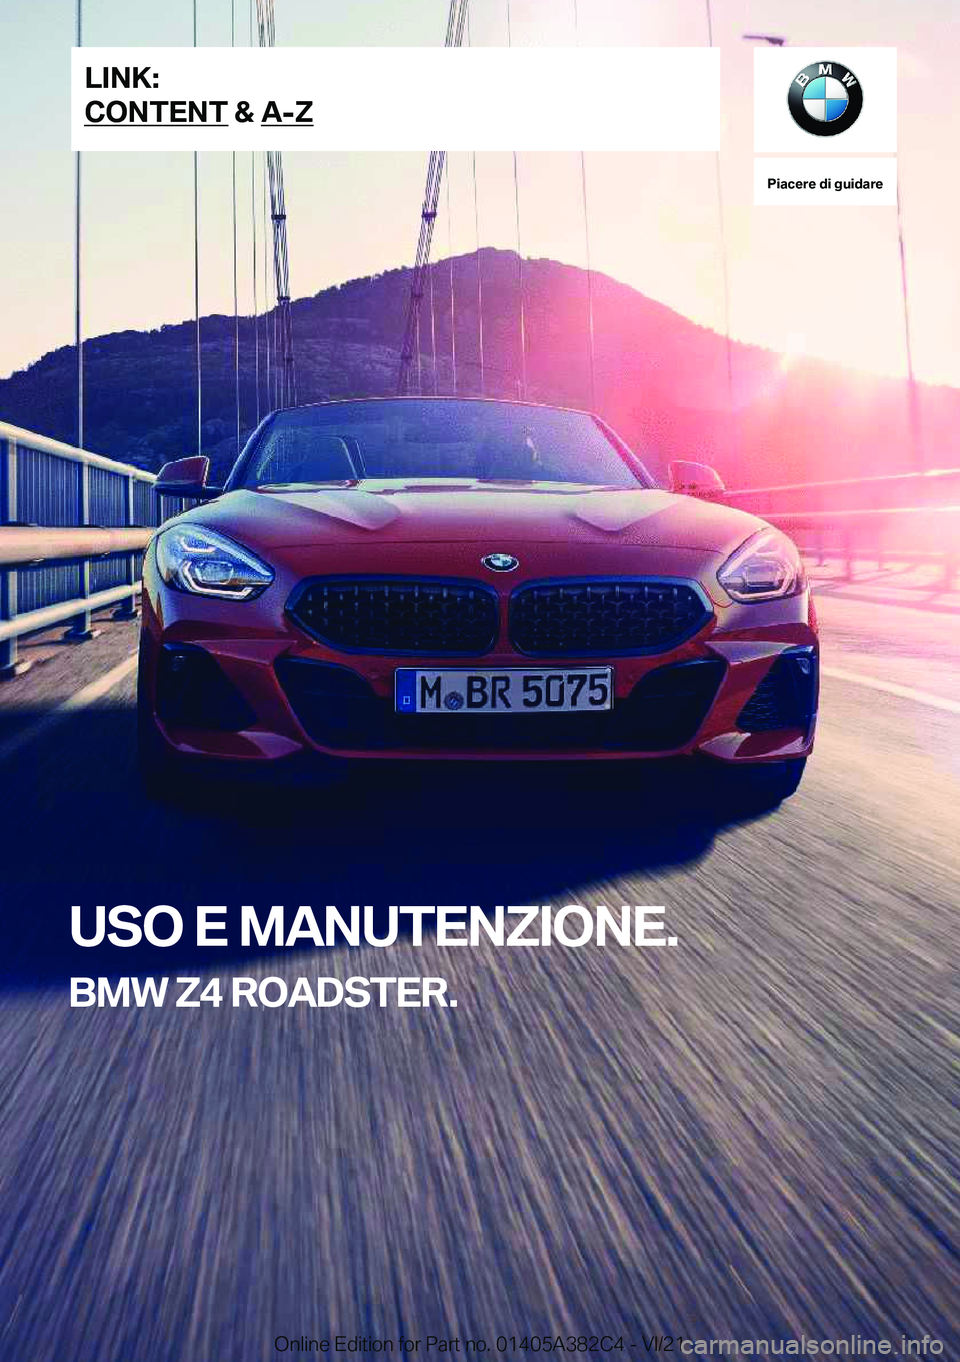 BMW Z4 2022  Libretti Di Uso E manutenzione (in Italian) �P�i�a�c�e�r�e��d�i��g�u�i�d�a�r�e
�U�S�O��E��M�A�N�U�T�E�N�Z�I�O�N�E�.
�B�M�W��Z�4��R�O�A�D�S�T�E�R�.�L�I�N�K�:
�C�O�N�T�E�N�T��&��A�-�Z�O�n�l�i�n�e��E�d�i�t�i�o�n��f�o�r��P�a�r�t��n�o�.�